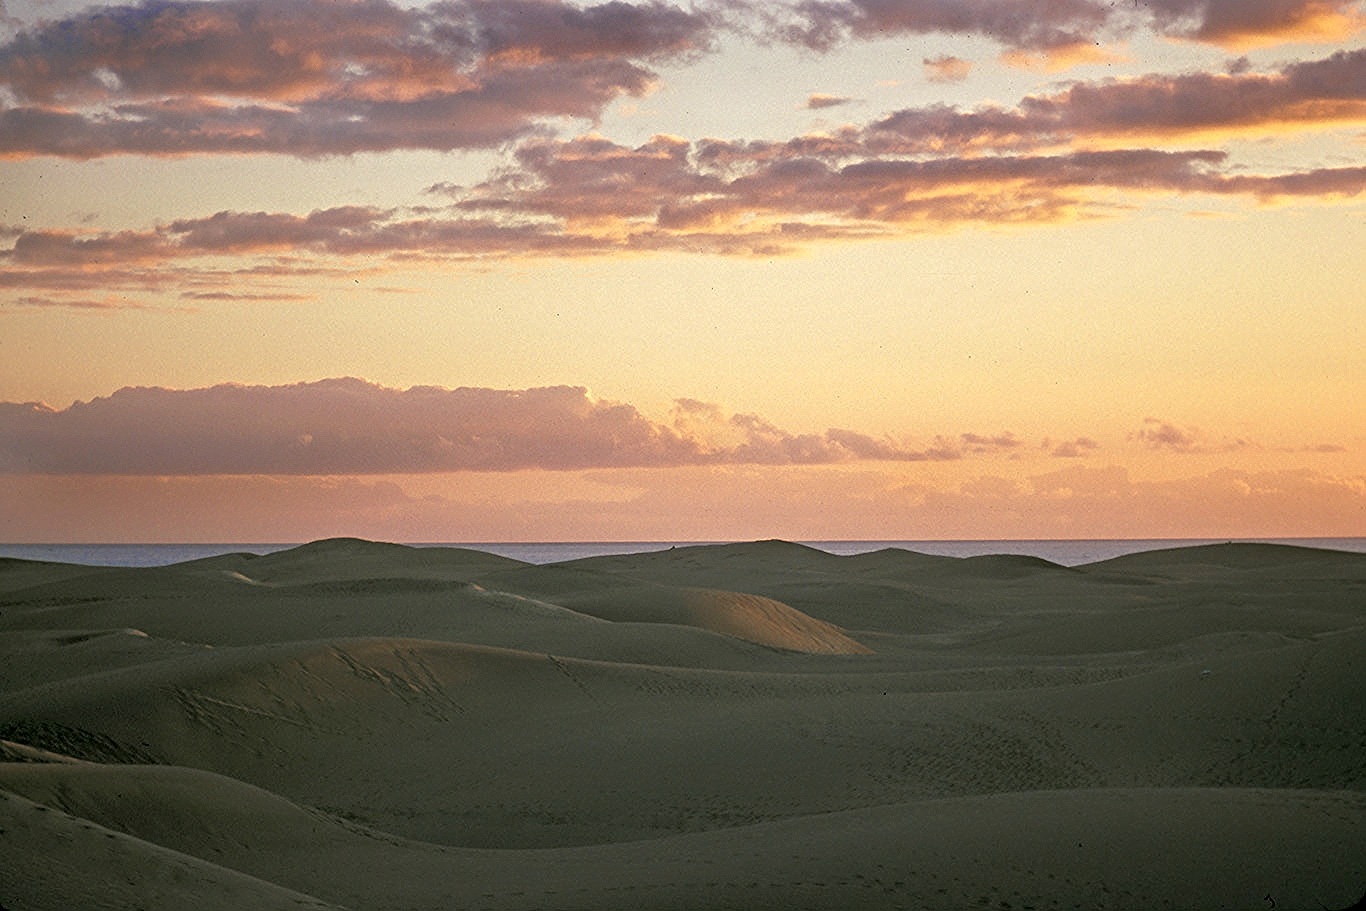 dunes in sunset***.jpg